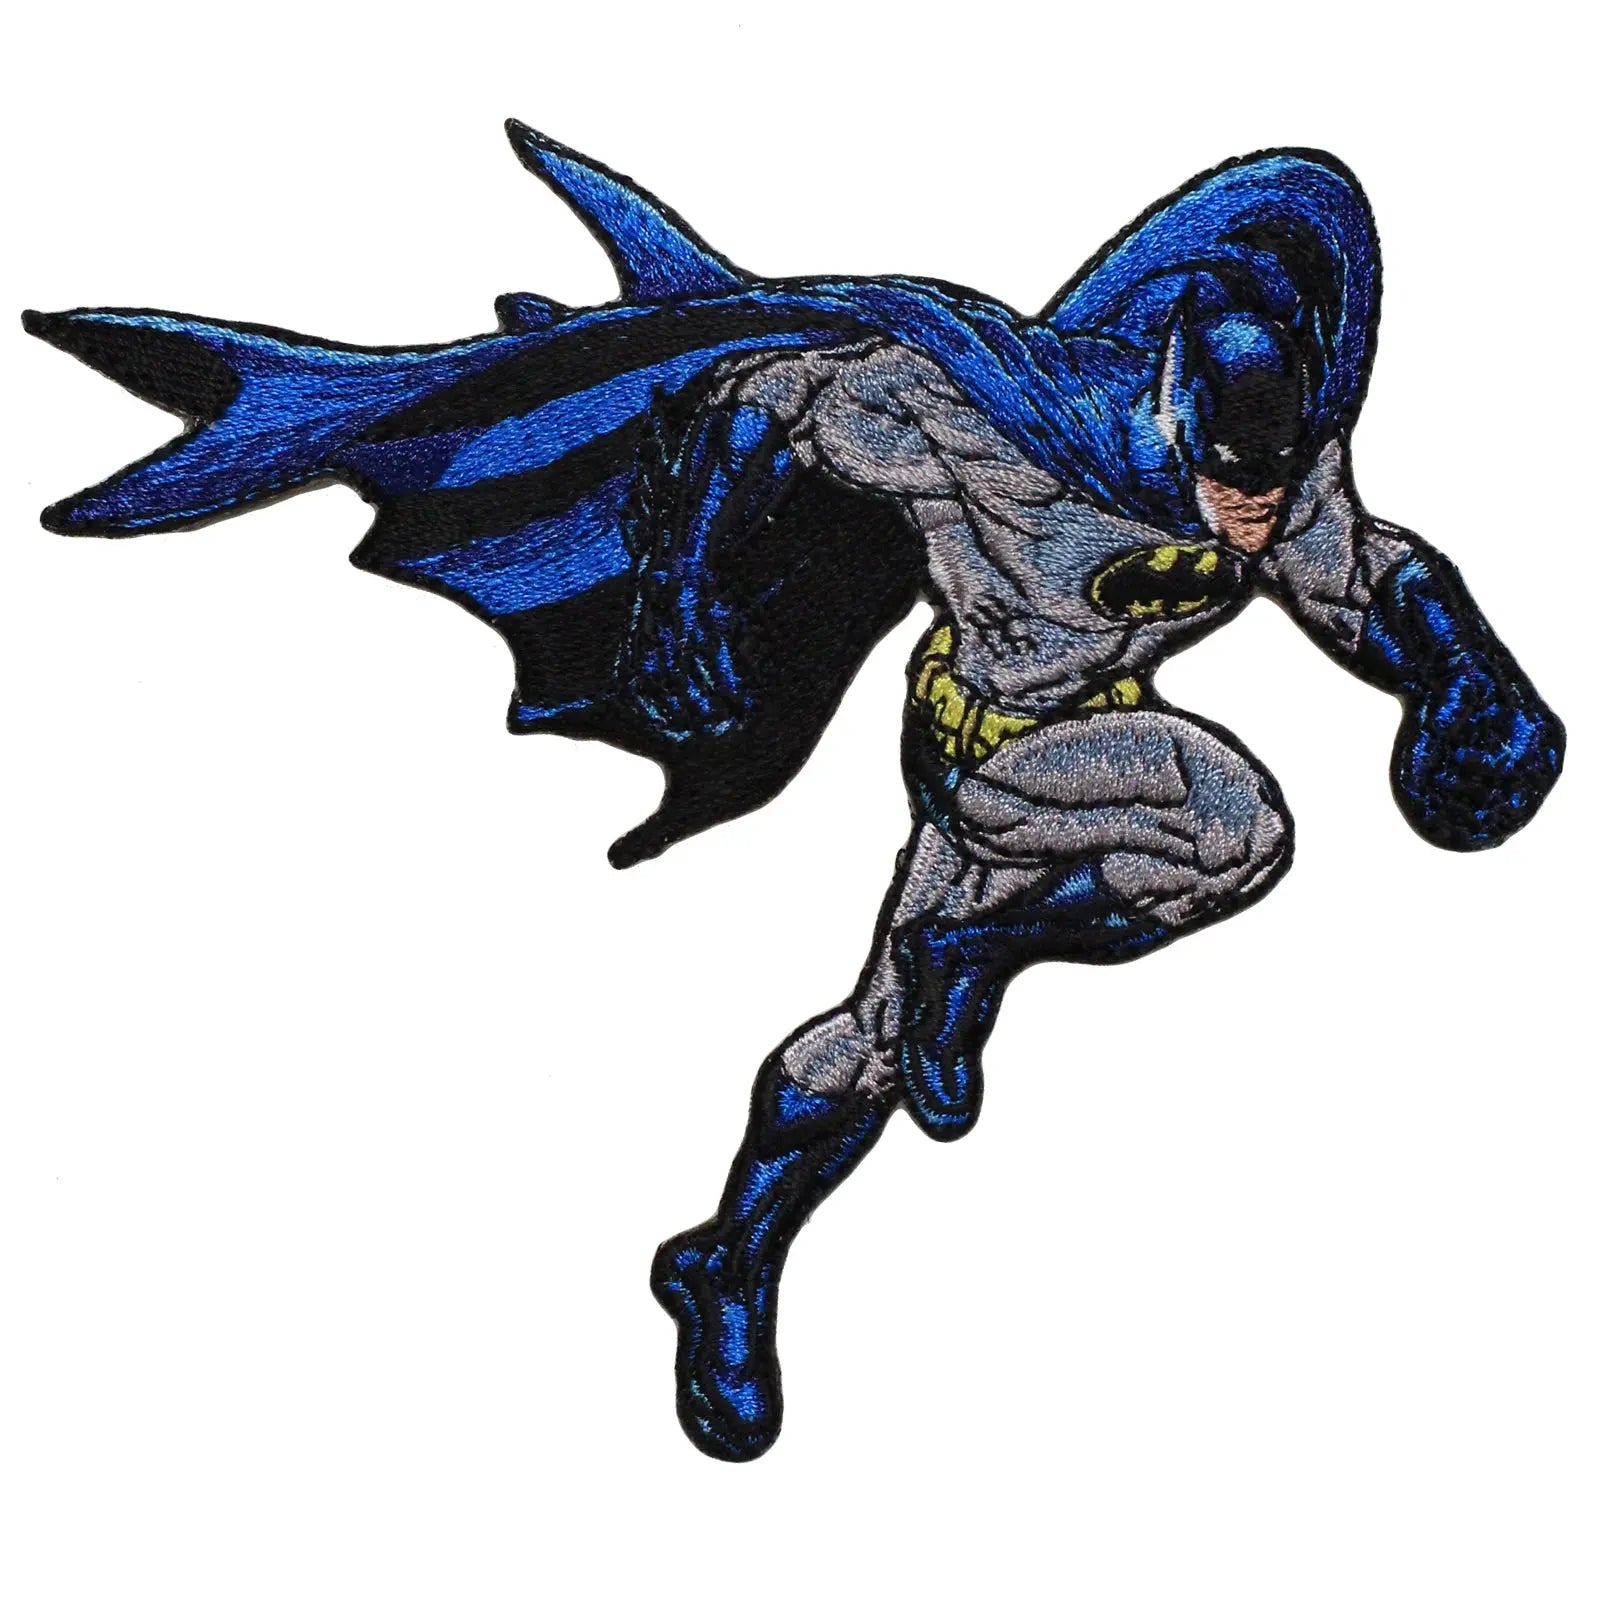 cartoon batman flying